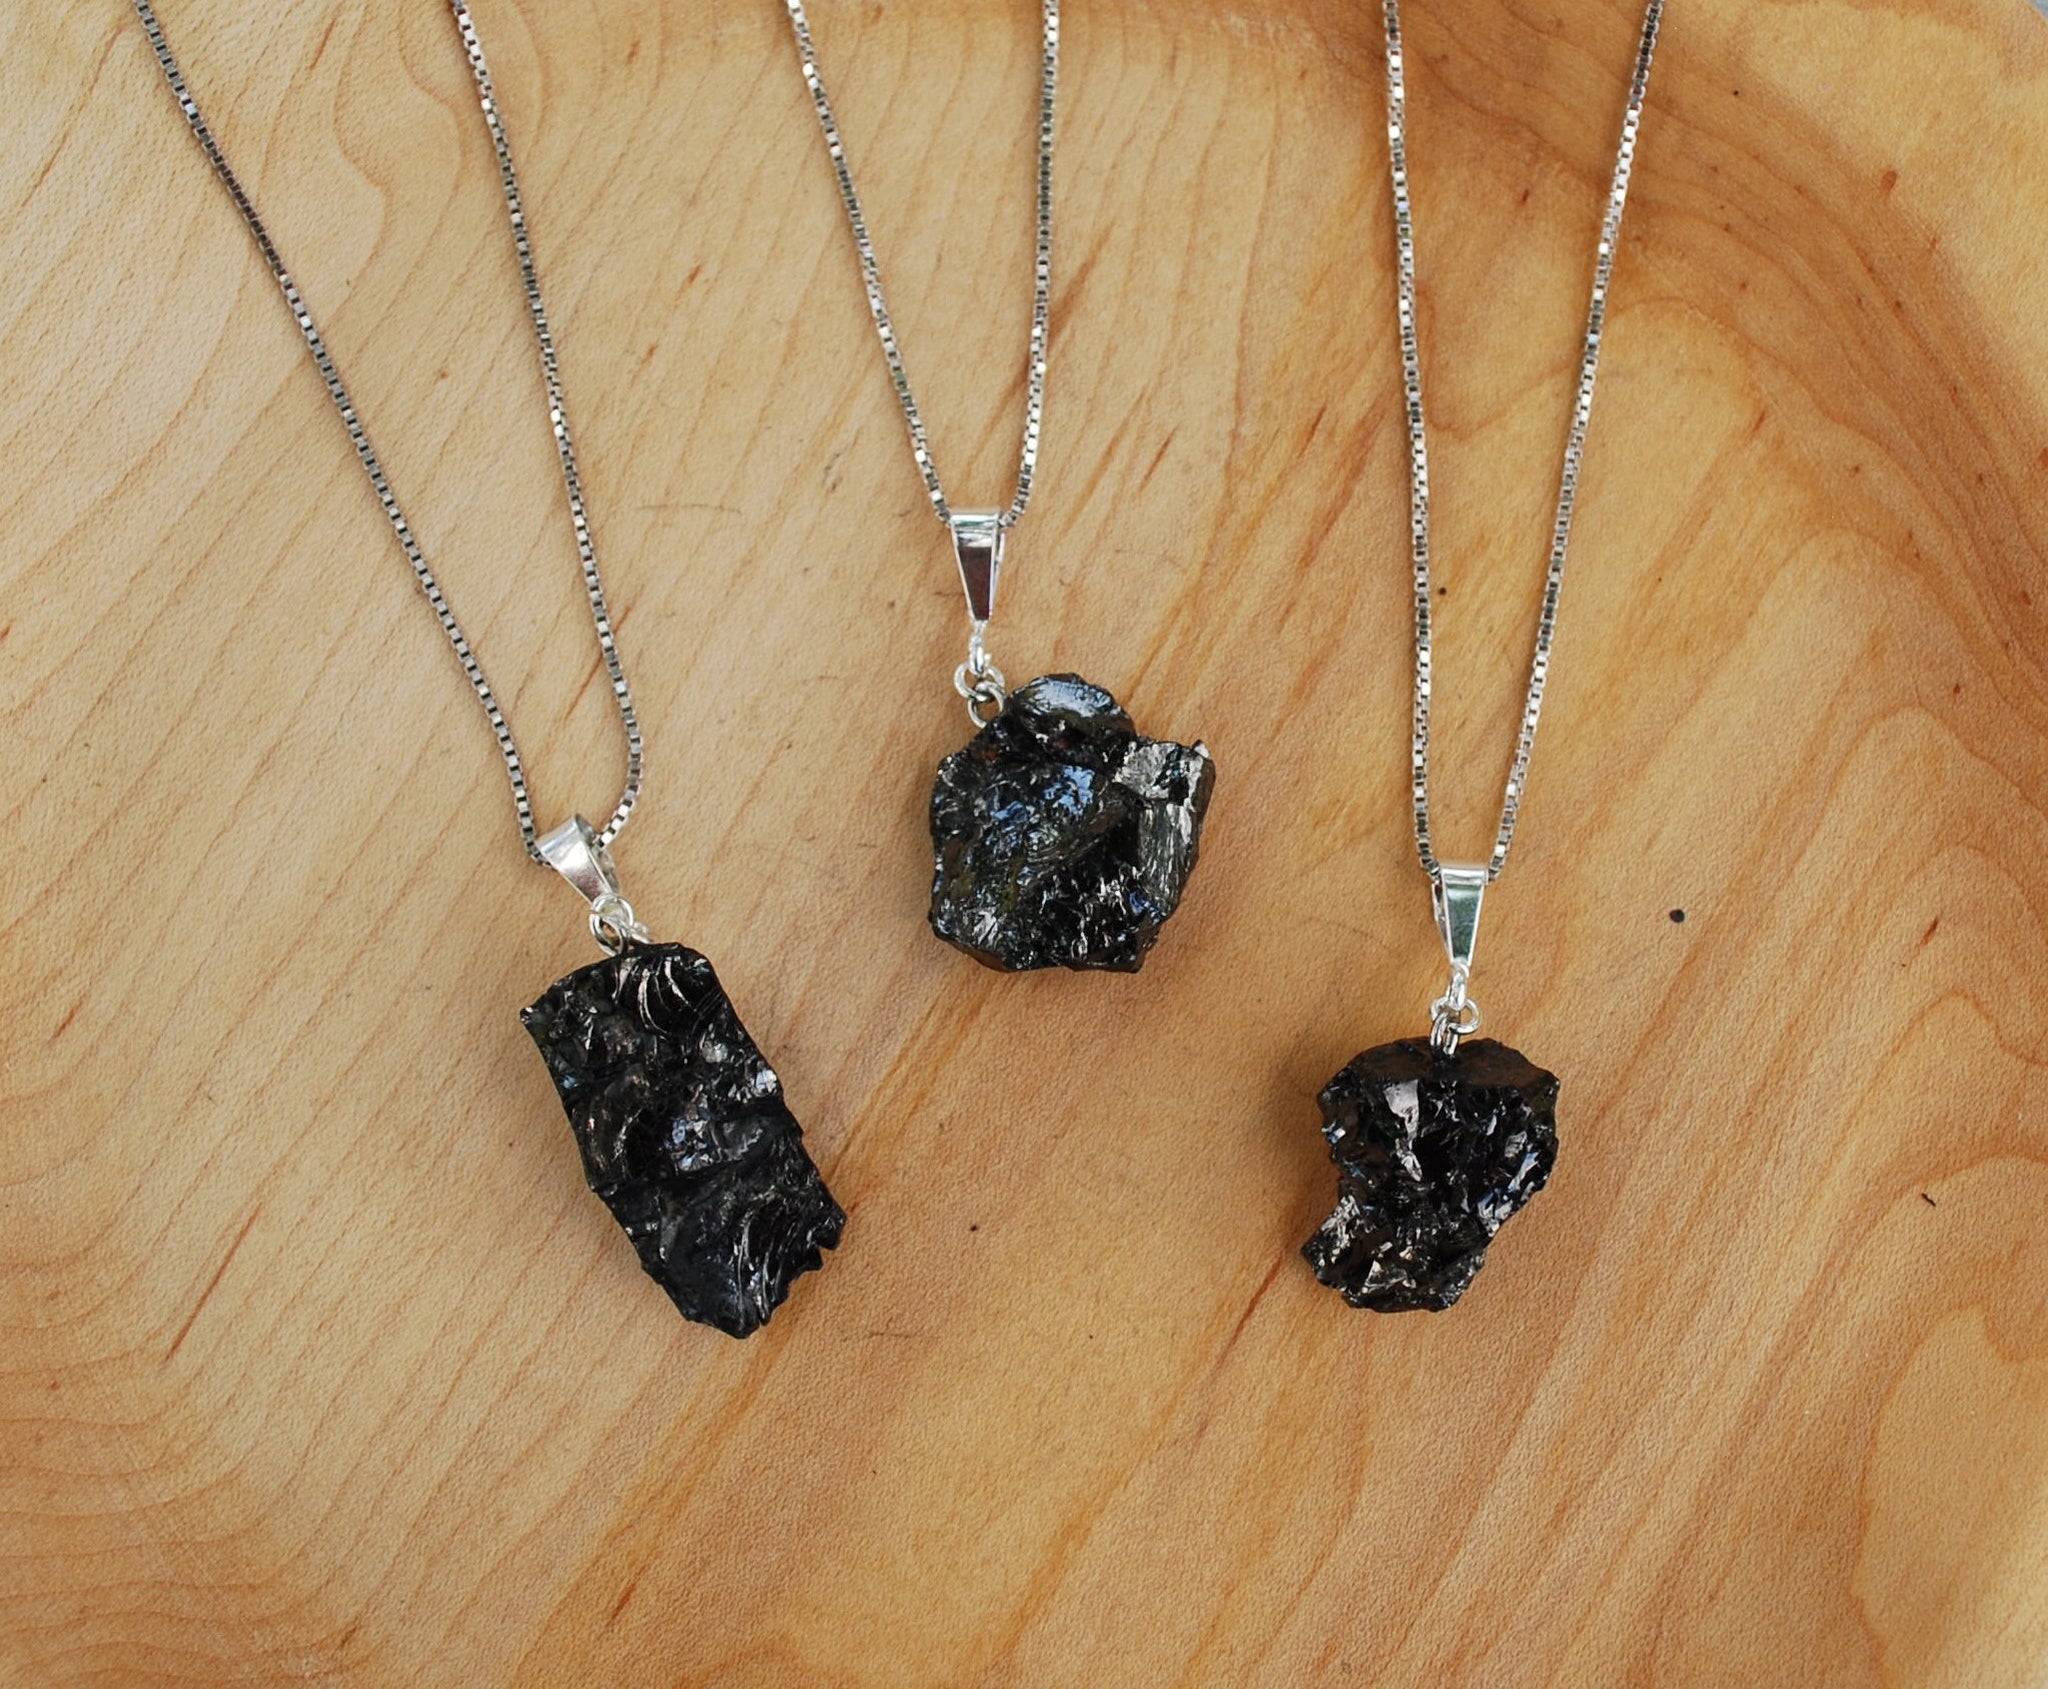  Karelian Heritage Elite Raw Shungite Stone Pendant 0.009-0.015  lb, Minimalistic Black Crystal Noble Shungite Jewelry, Authentic Shungite  Stone Necklace